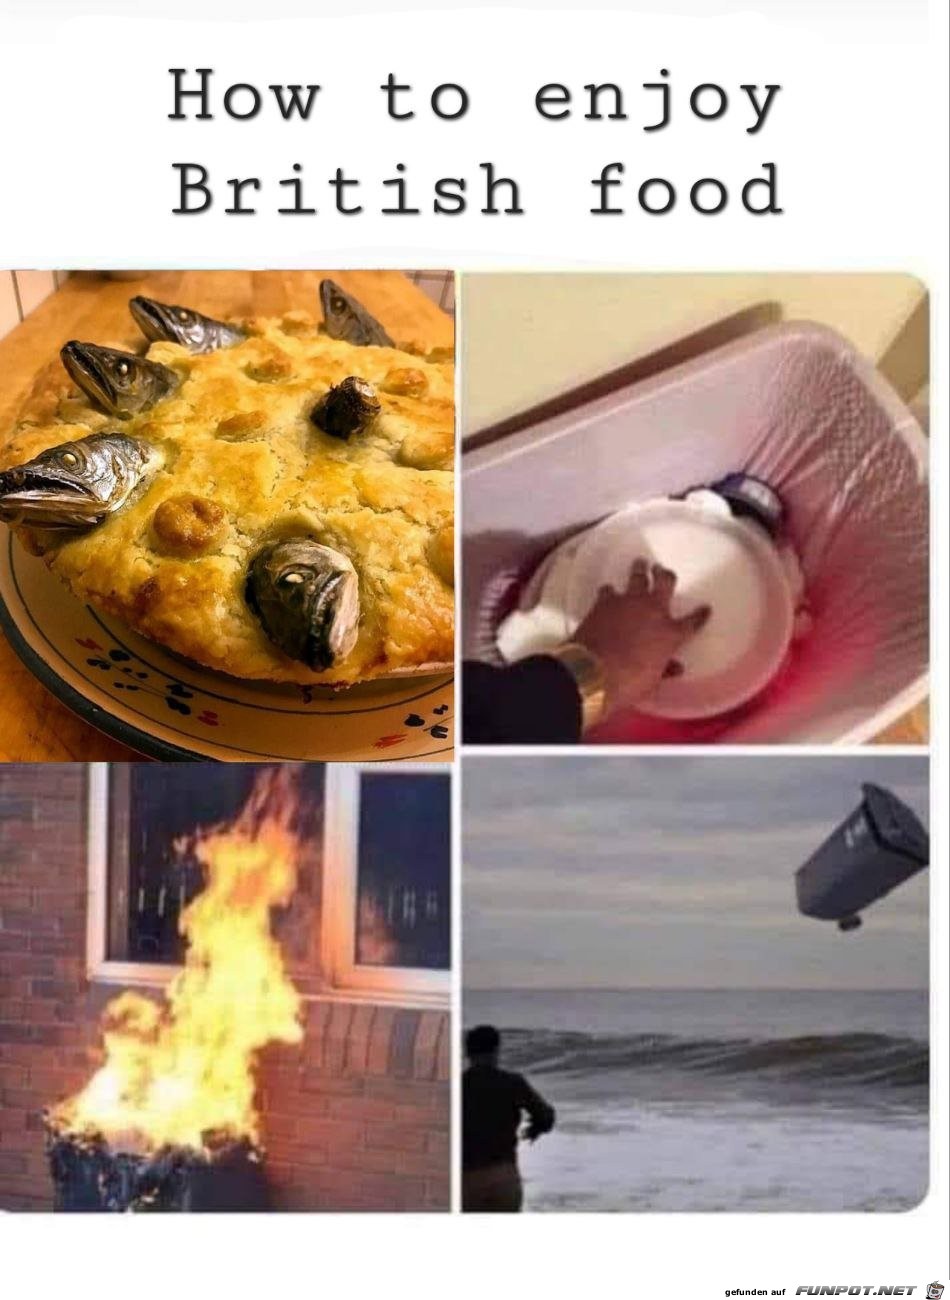 So genießt man britisches Essen